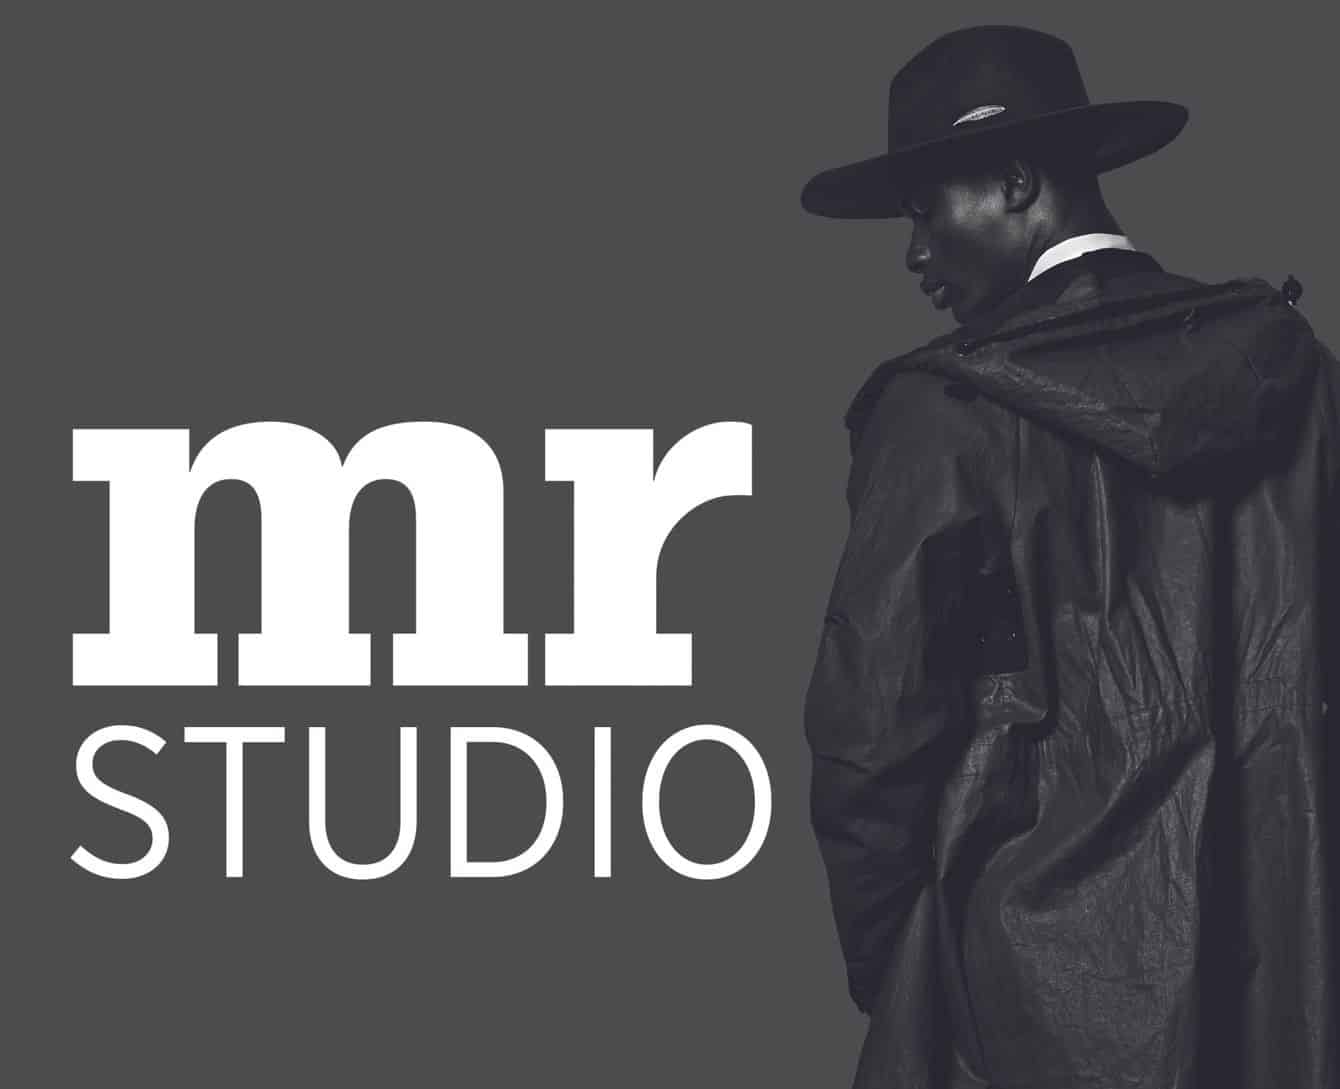 MR Studio